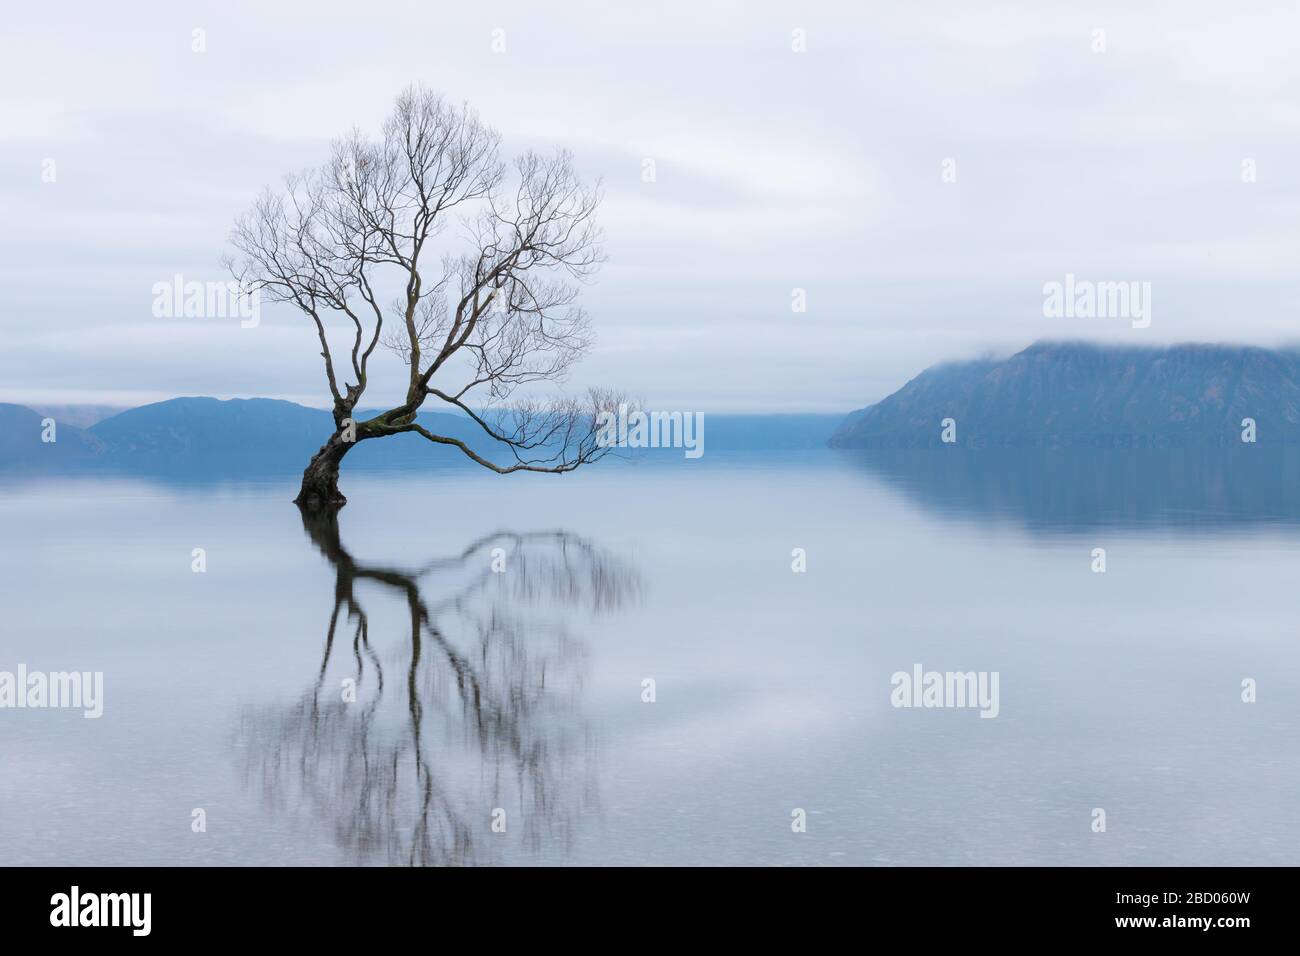 The Wanaka Tree, the most famous willow tree in Lake Wanaka New Zealand Stock Photo